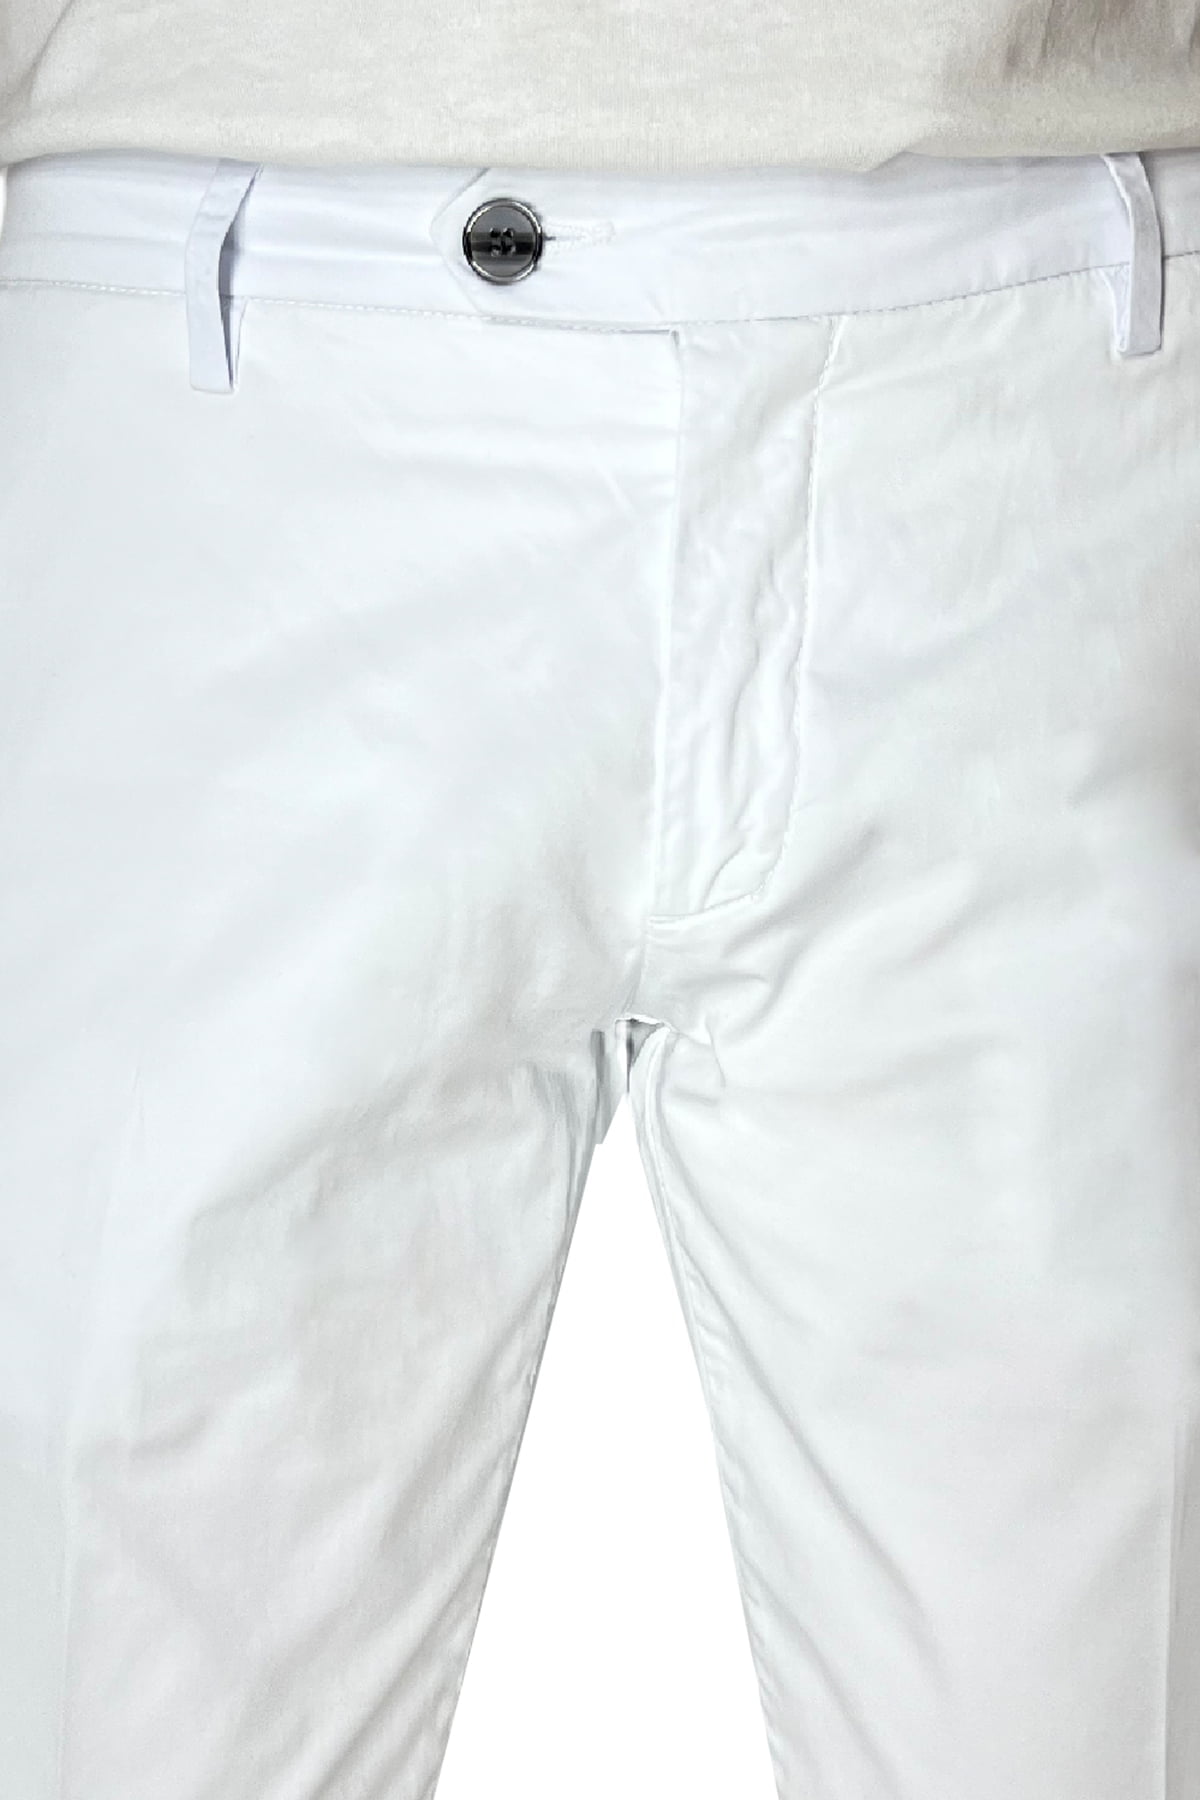 Pantalone uomo bianco in Cotone tasca america leggermente elastico estivo